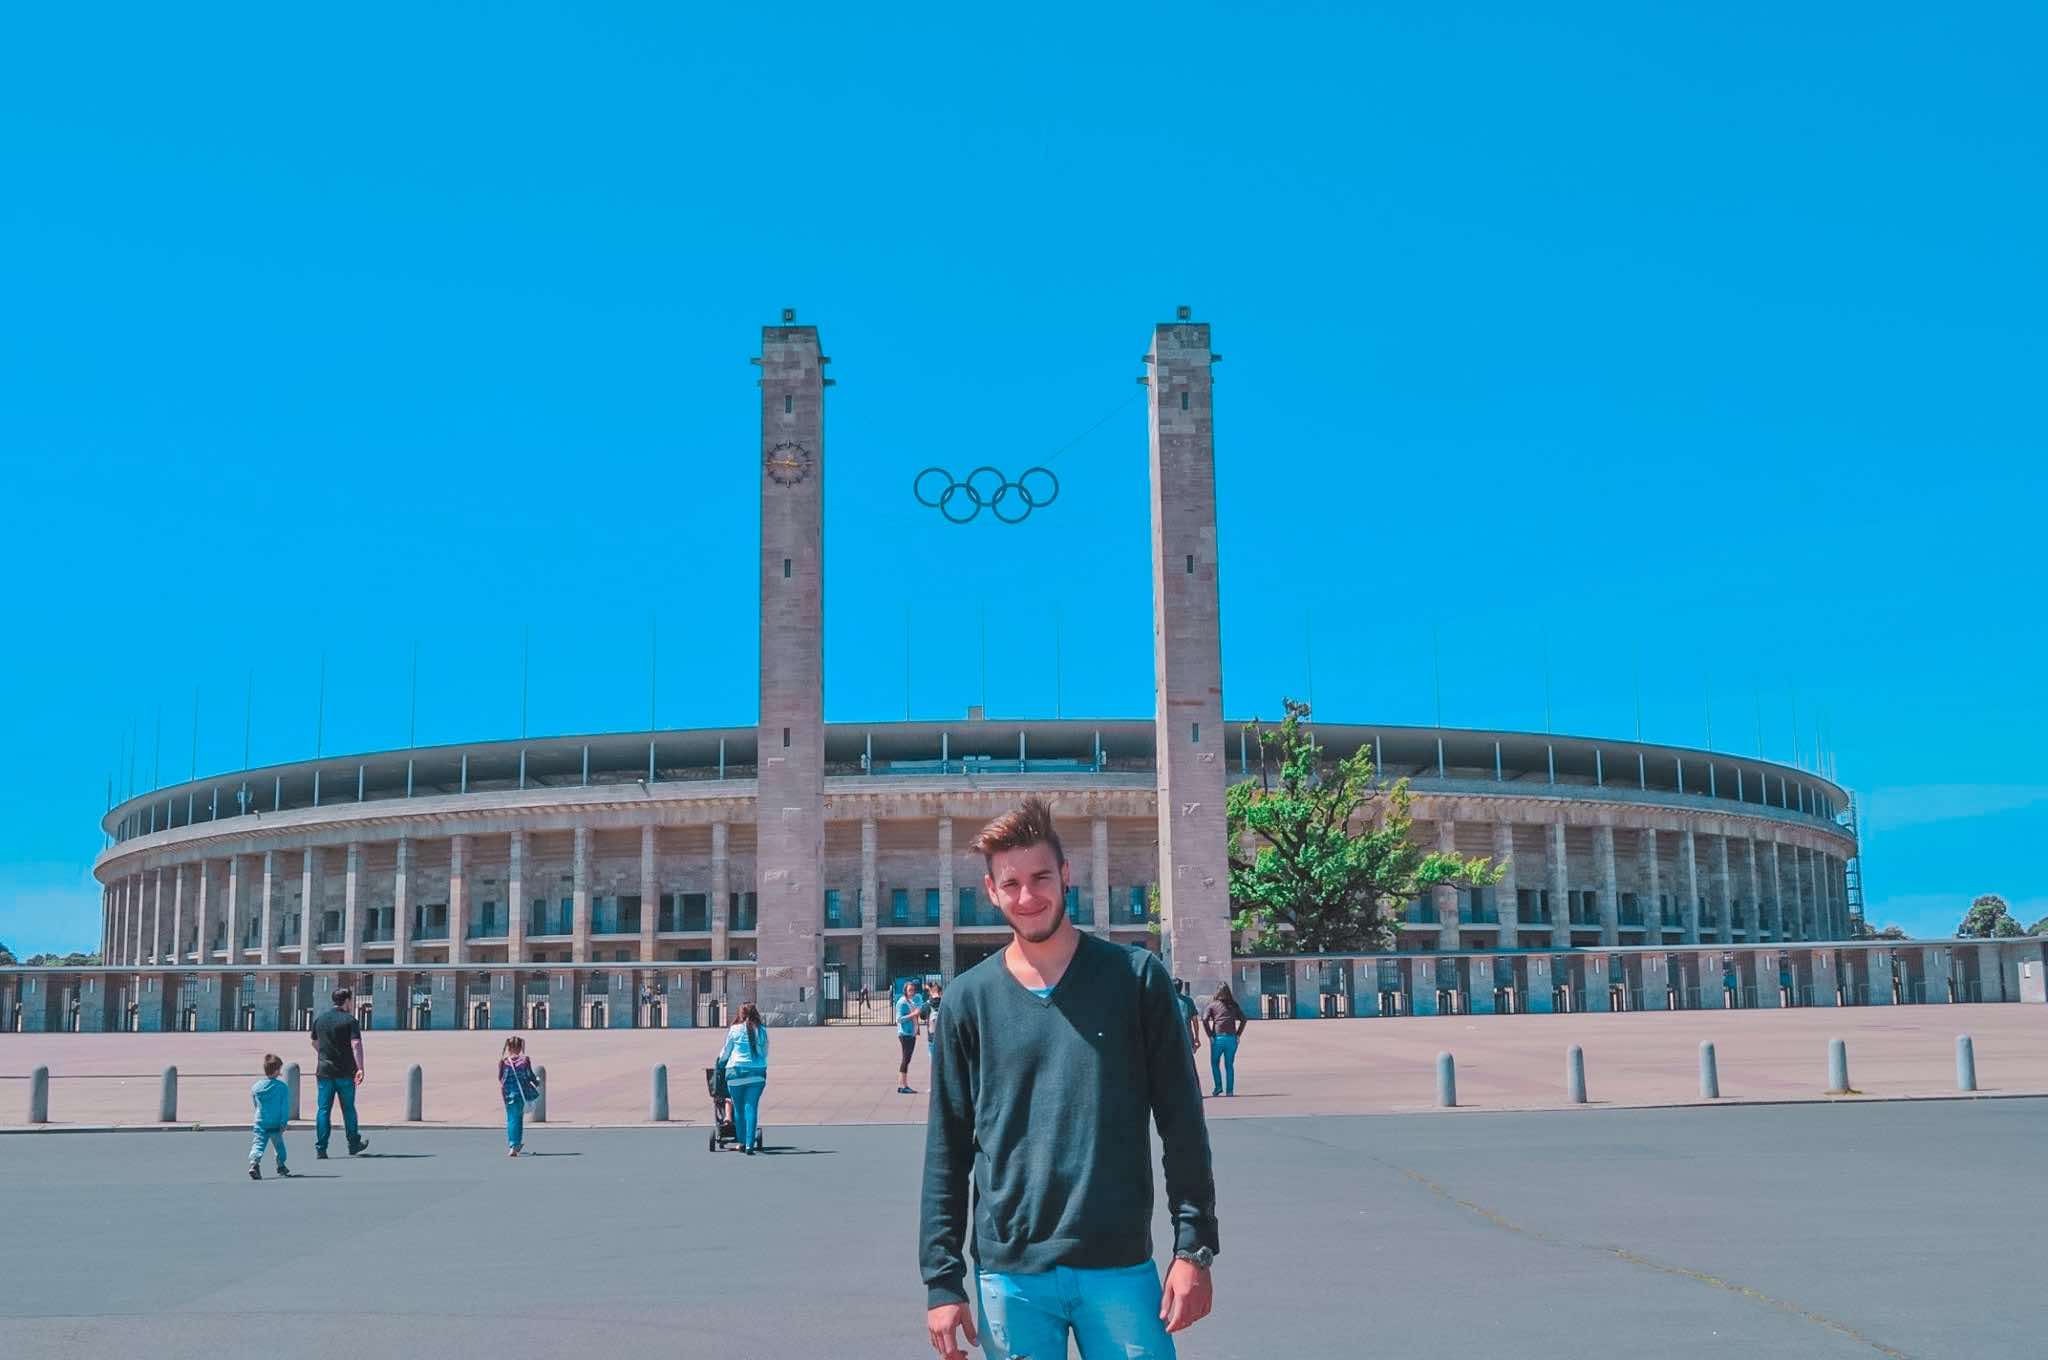 Visitare l'olympiastadion di Berlino: tutte le informazioni utili